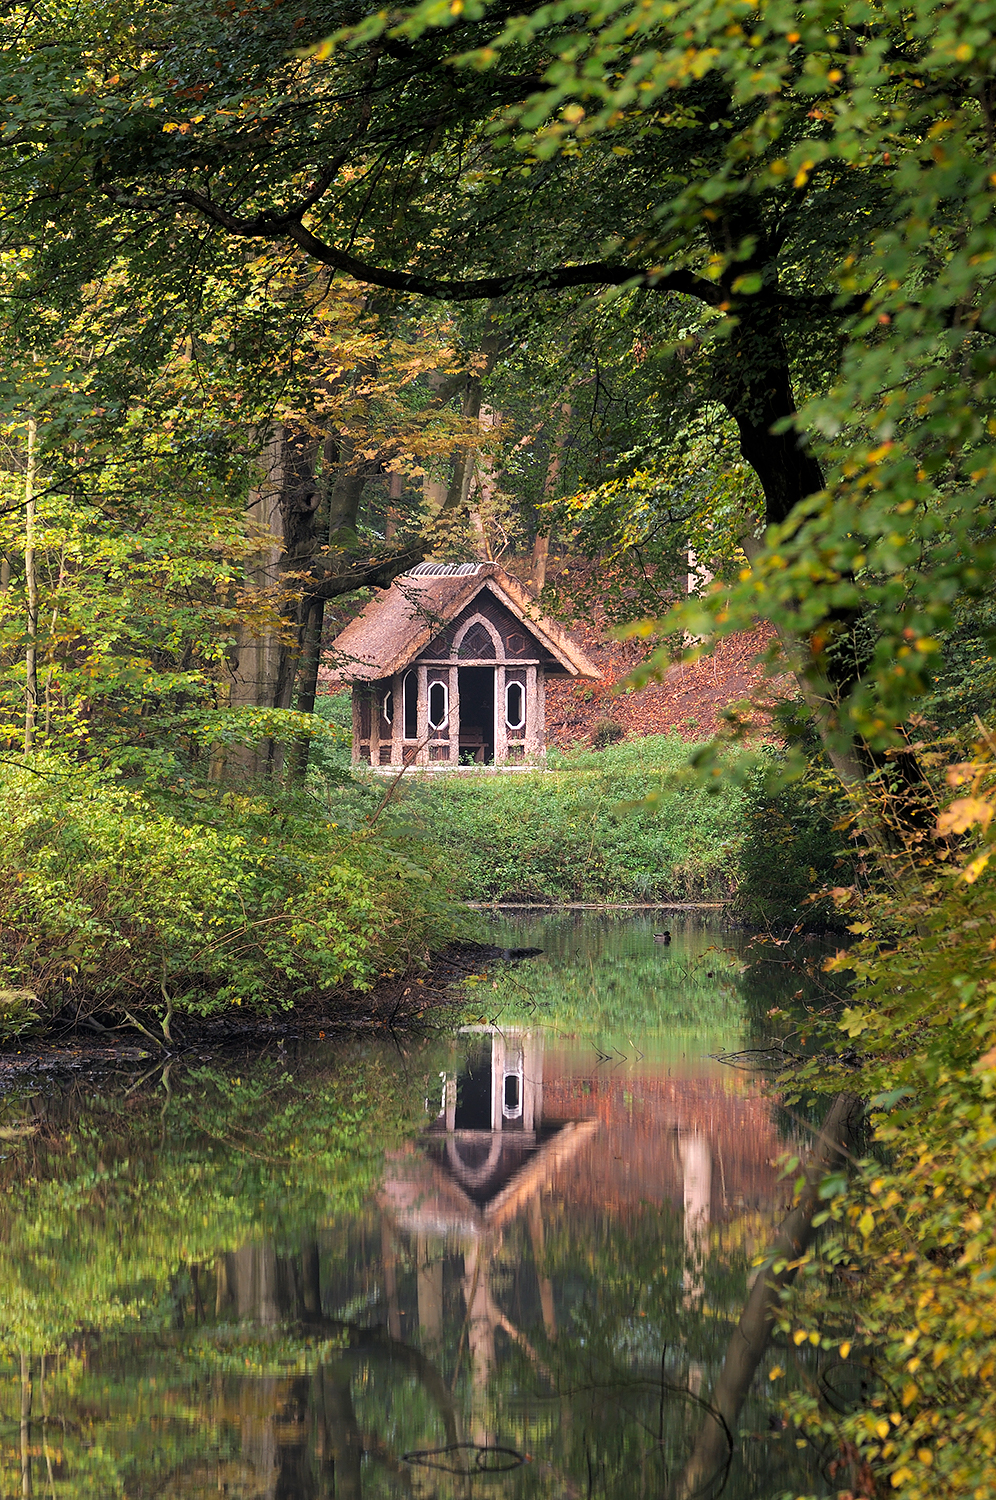 Doorkijkje naar een weerspiegeling van prieeltje in het water van beek tijdens de herfst op Landgoed Elswout in Overveen.